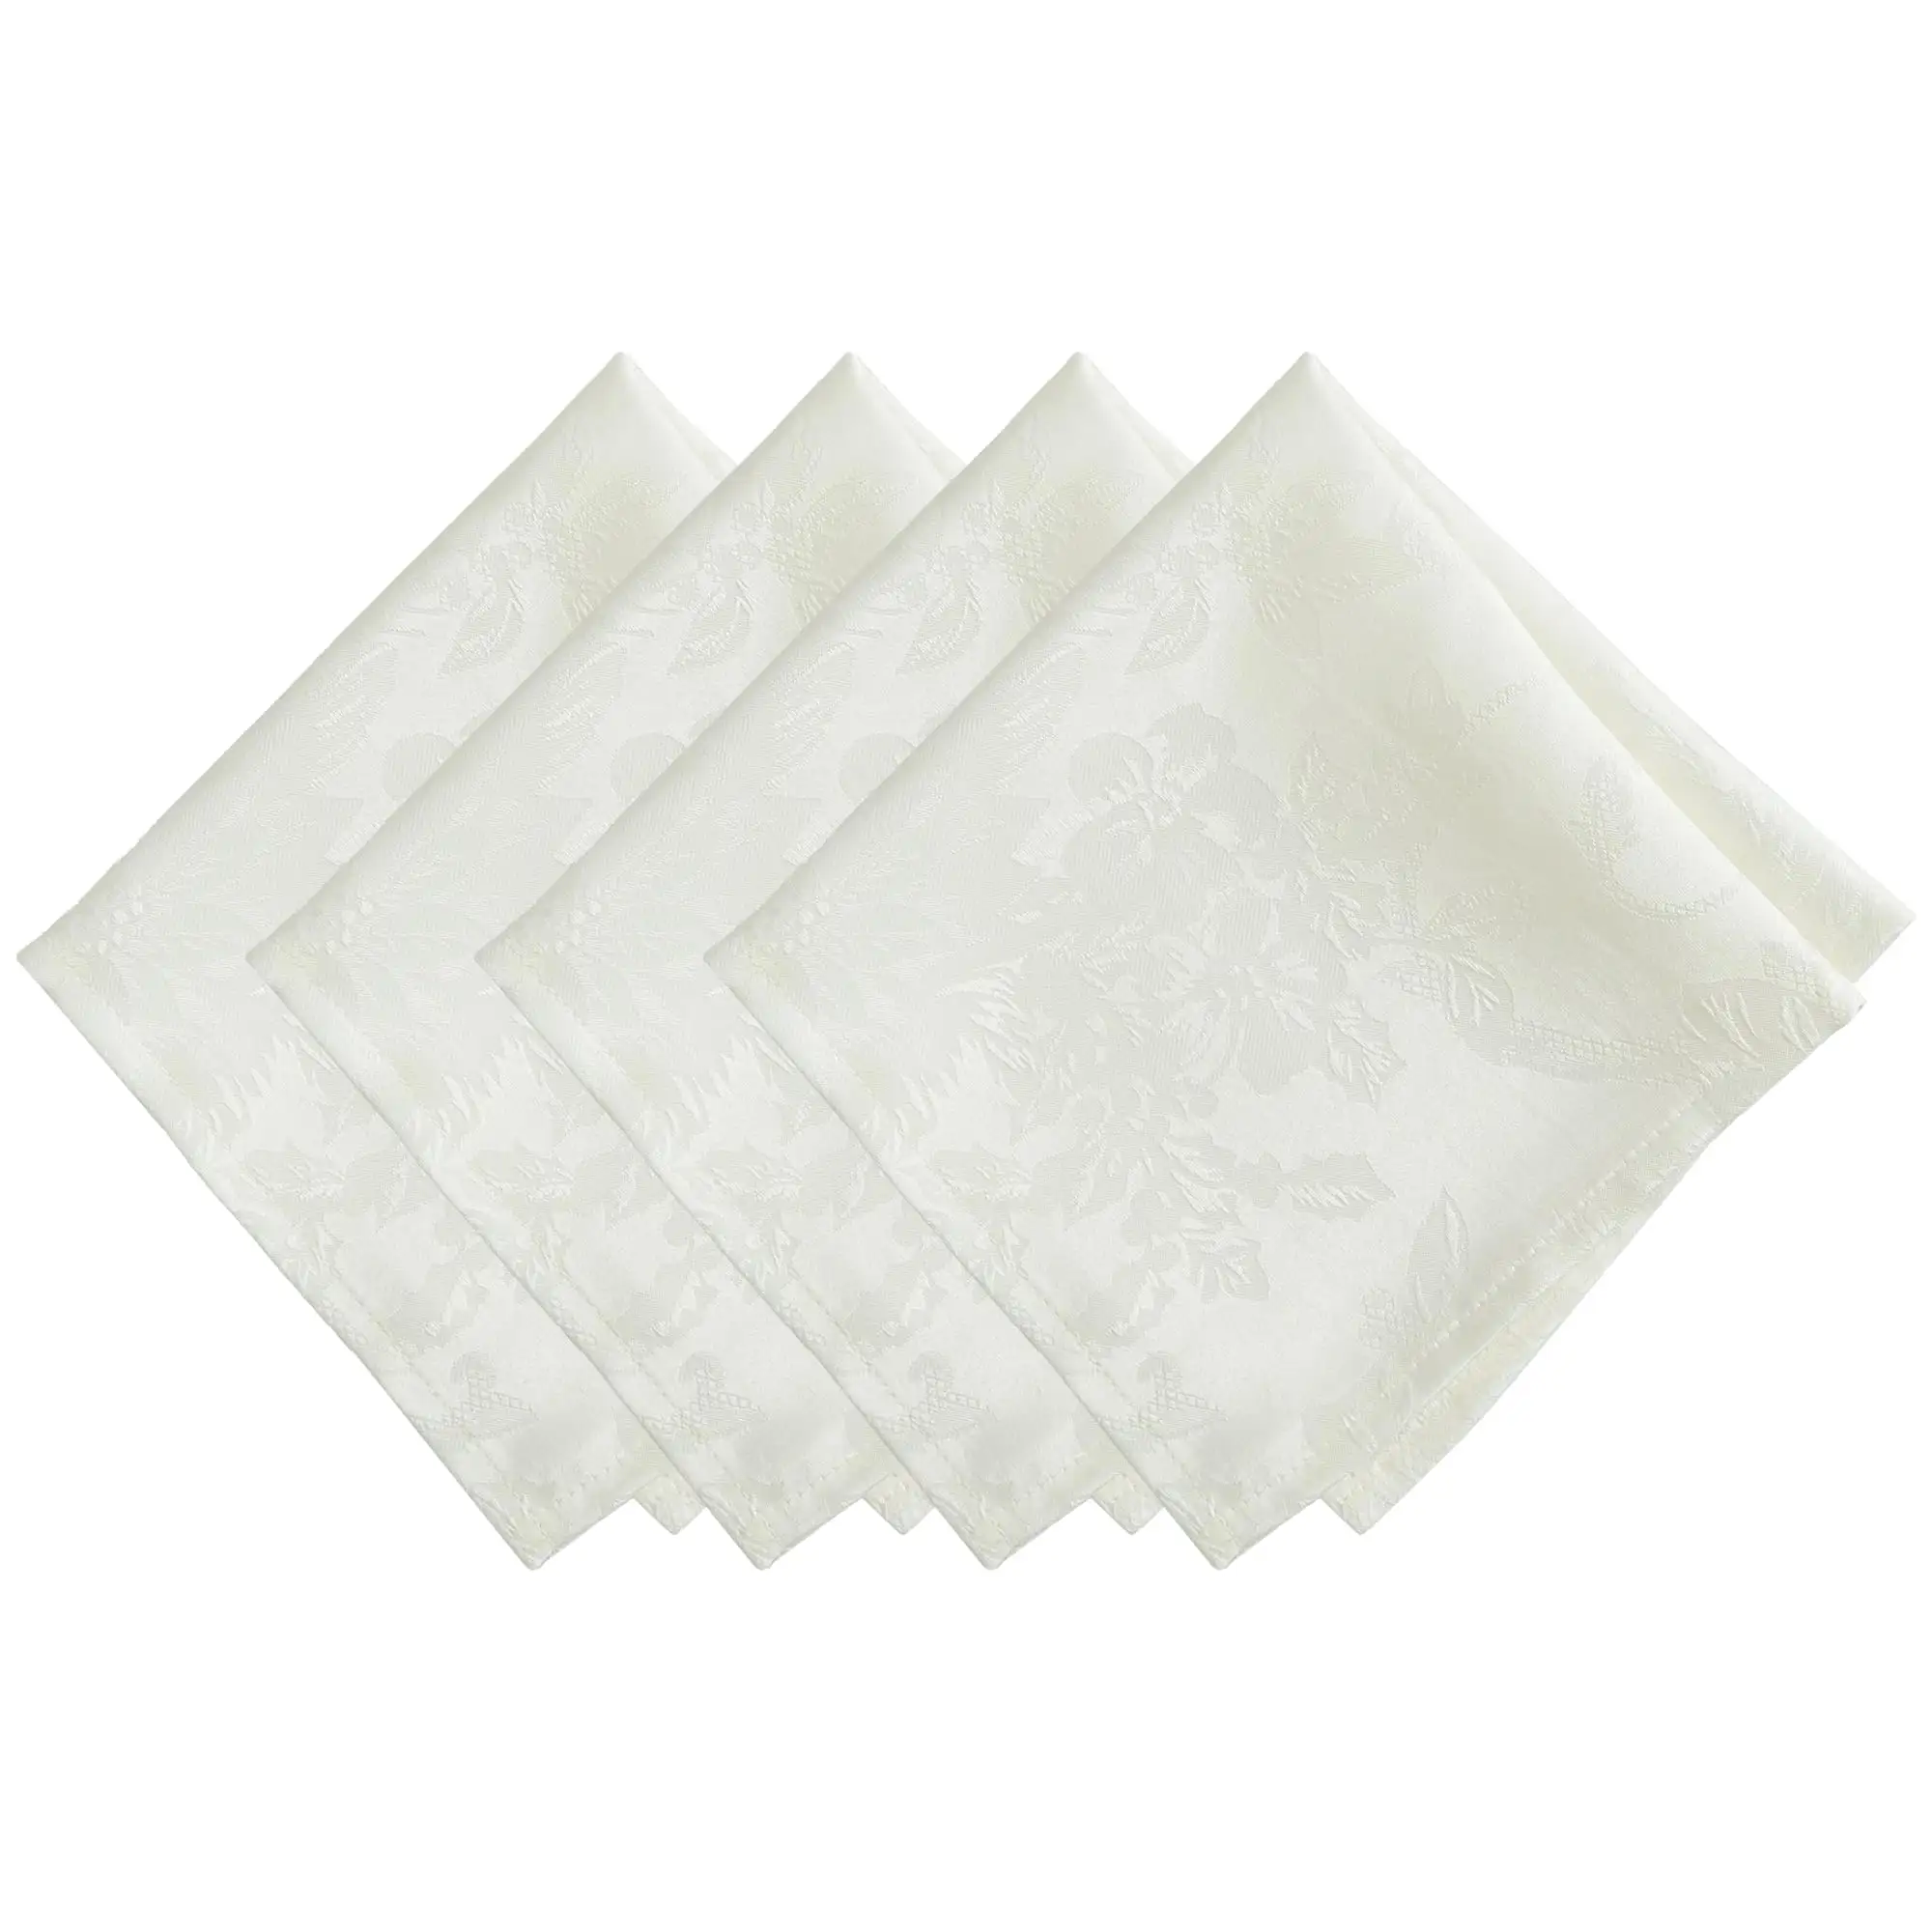 ジャカード織りスクロールデザインサテンホワイトカラーナプキン100% ポリエステルナプキンセット刺繍ポリエステルエンブロ結婚式用